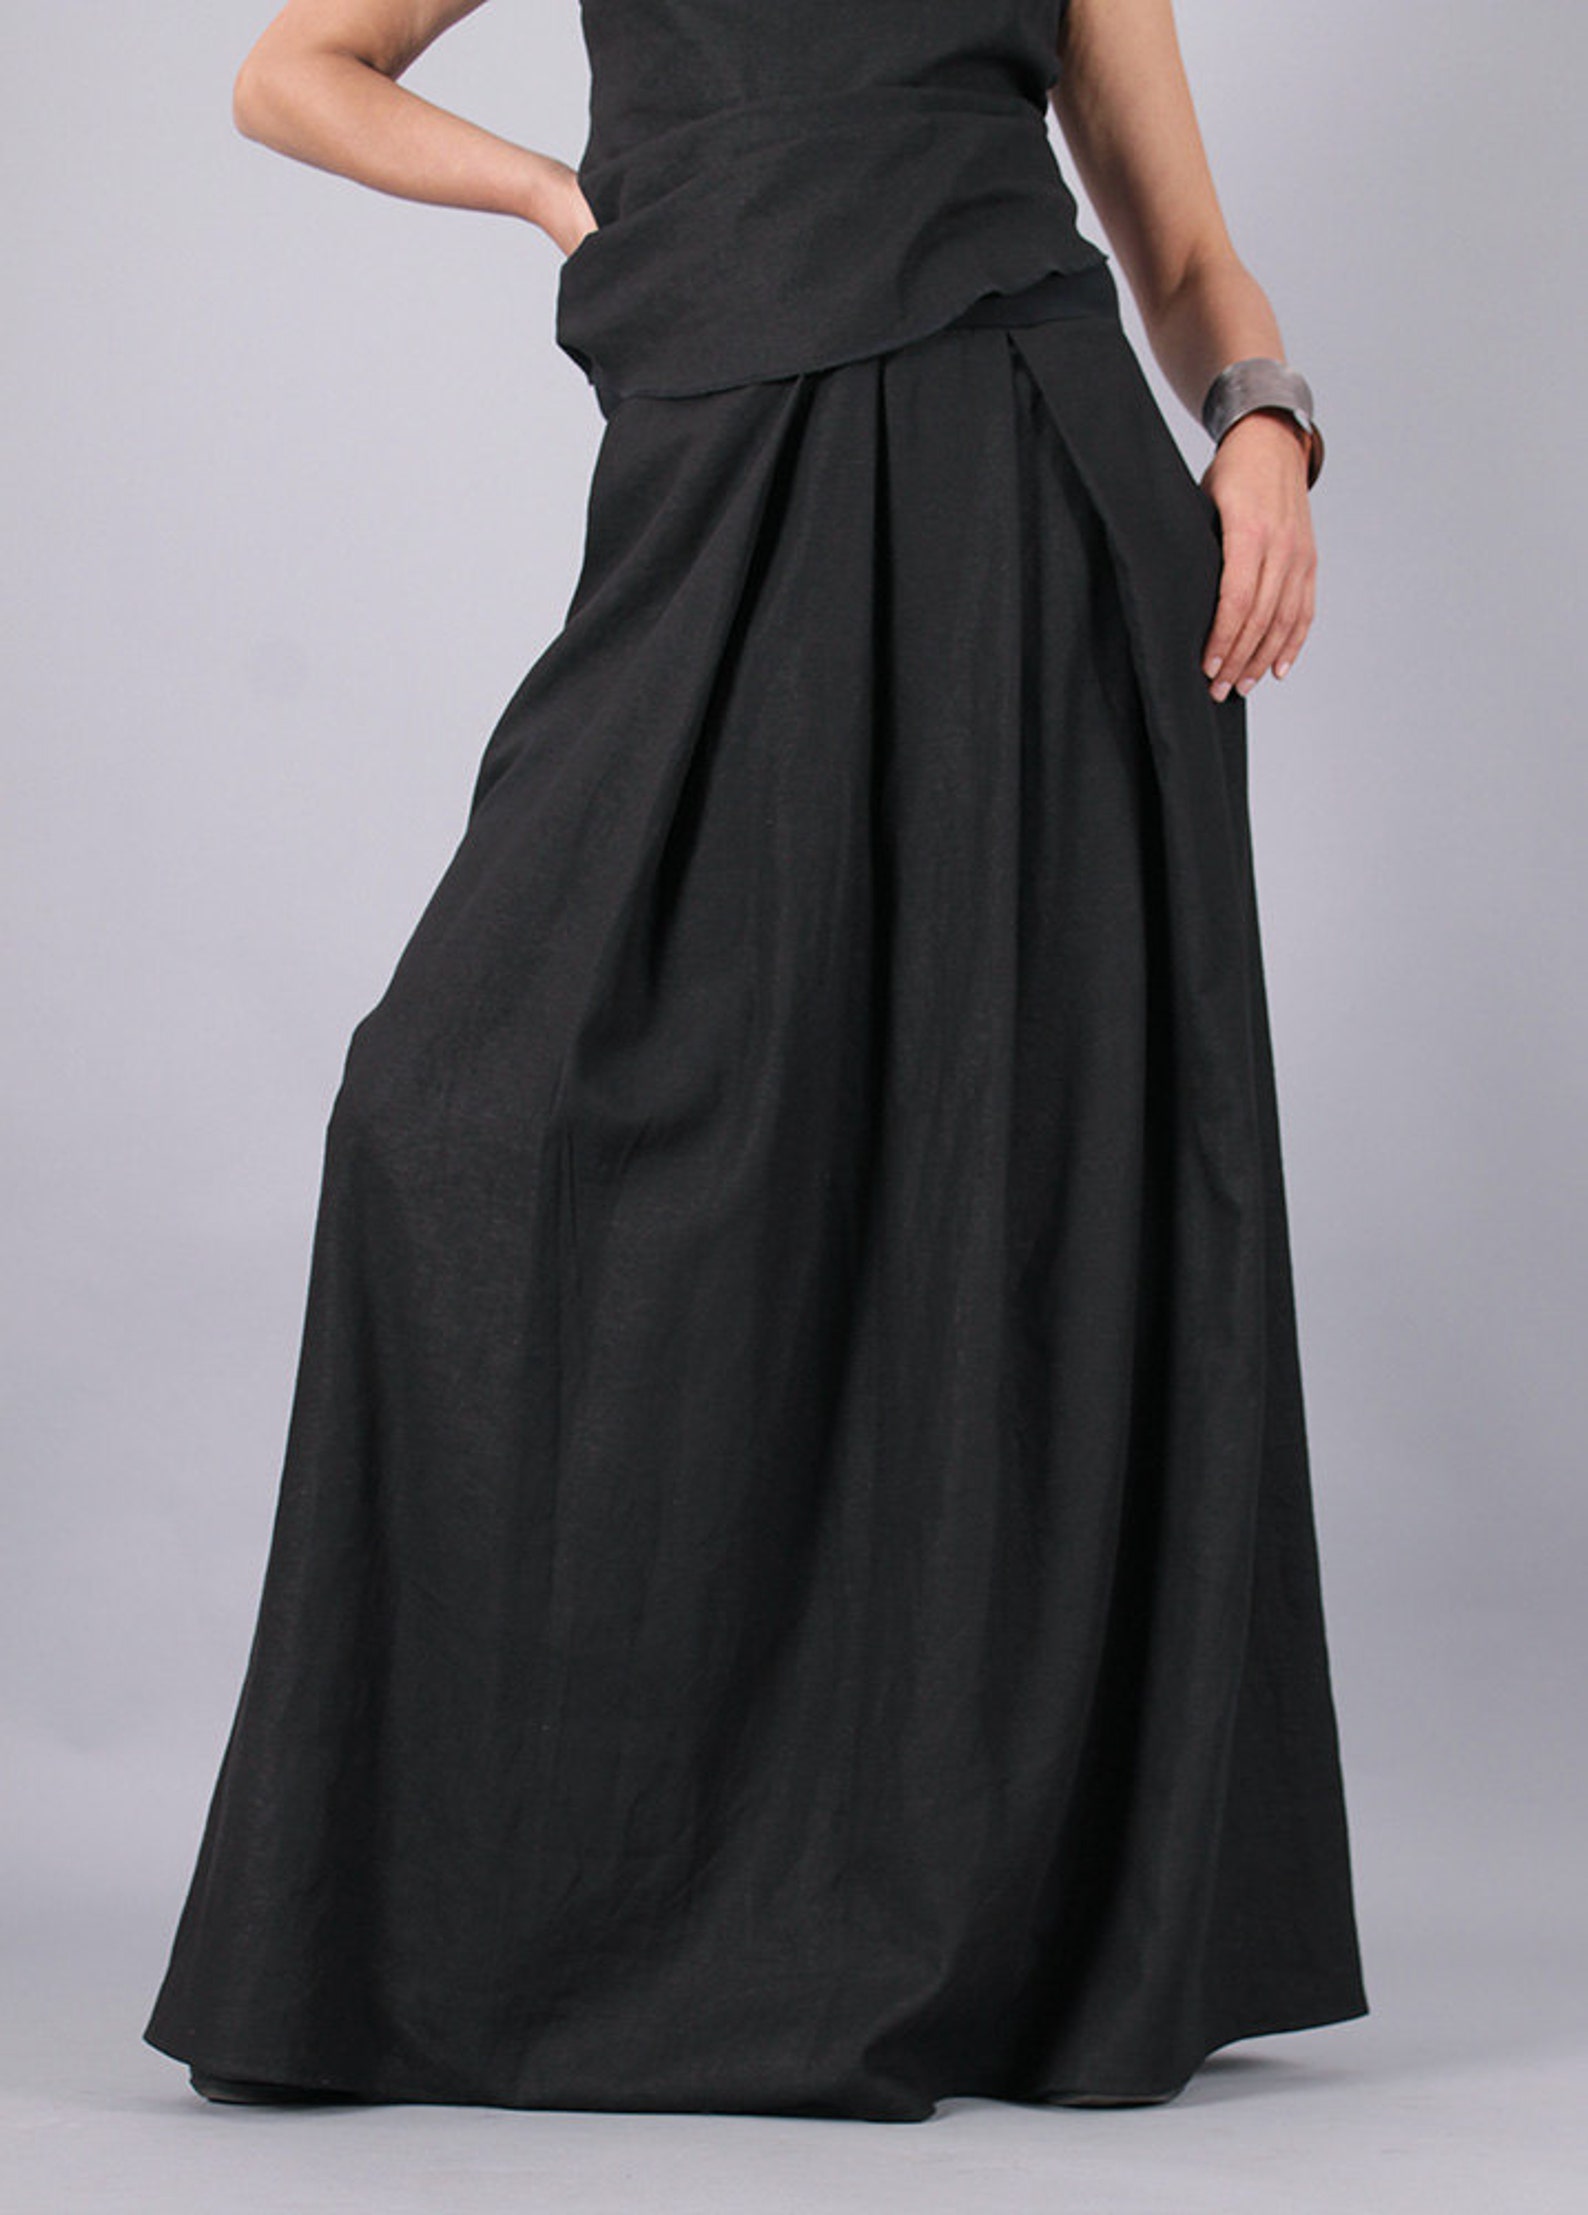 Linen skirtLong Skirt Floor length skirt Black long linen | Etsy